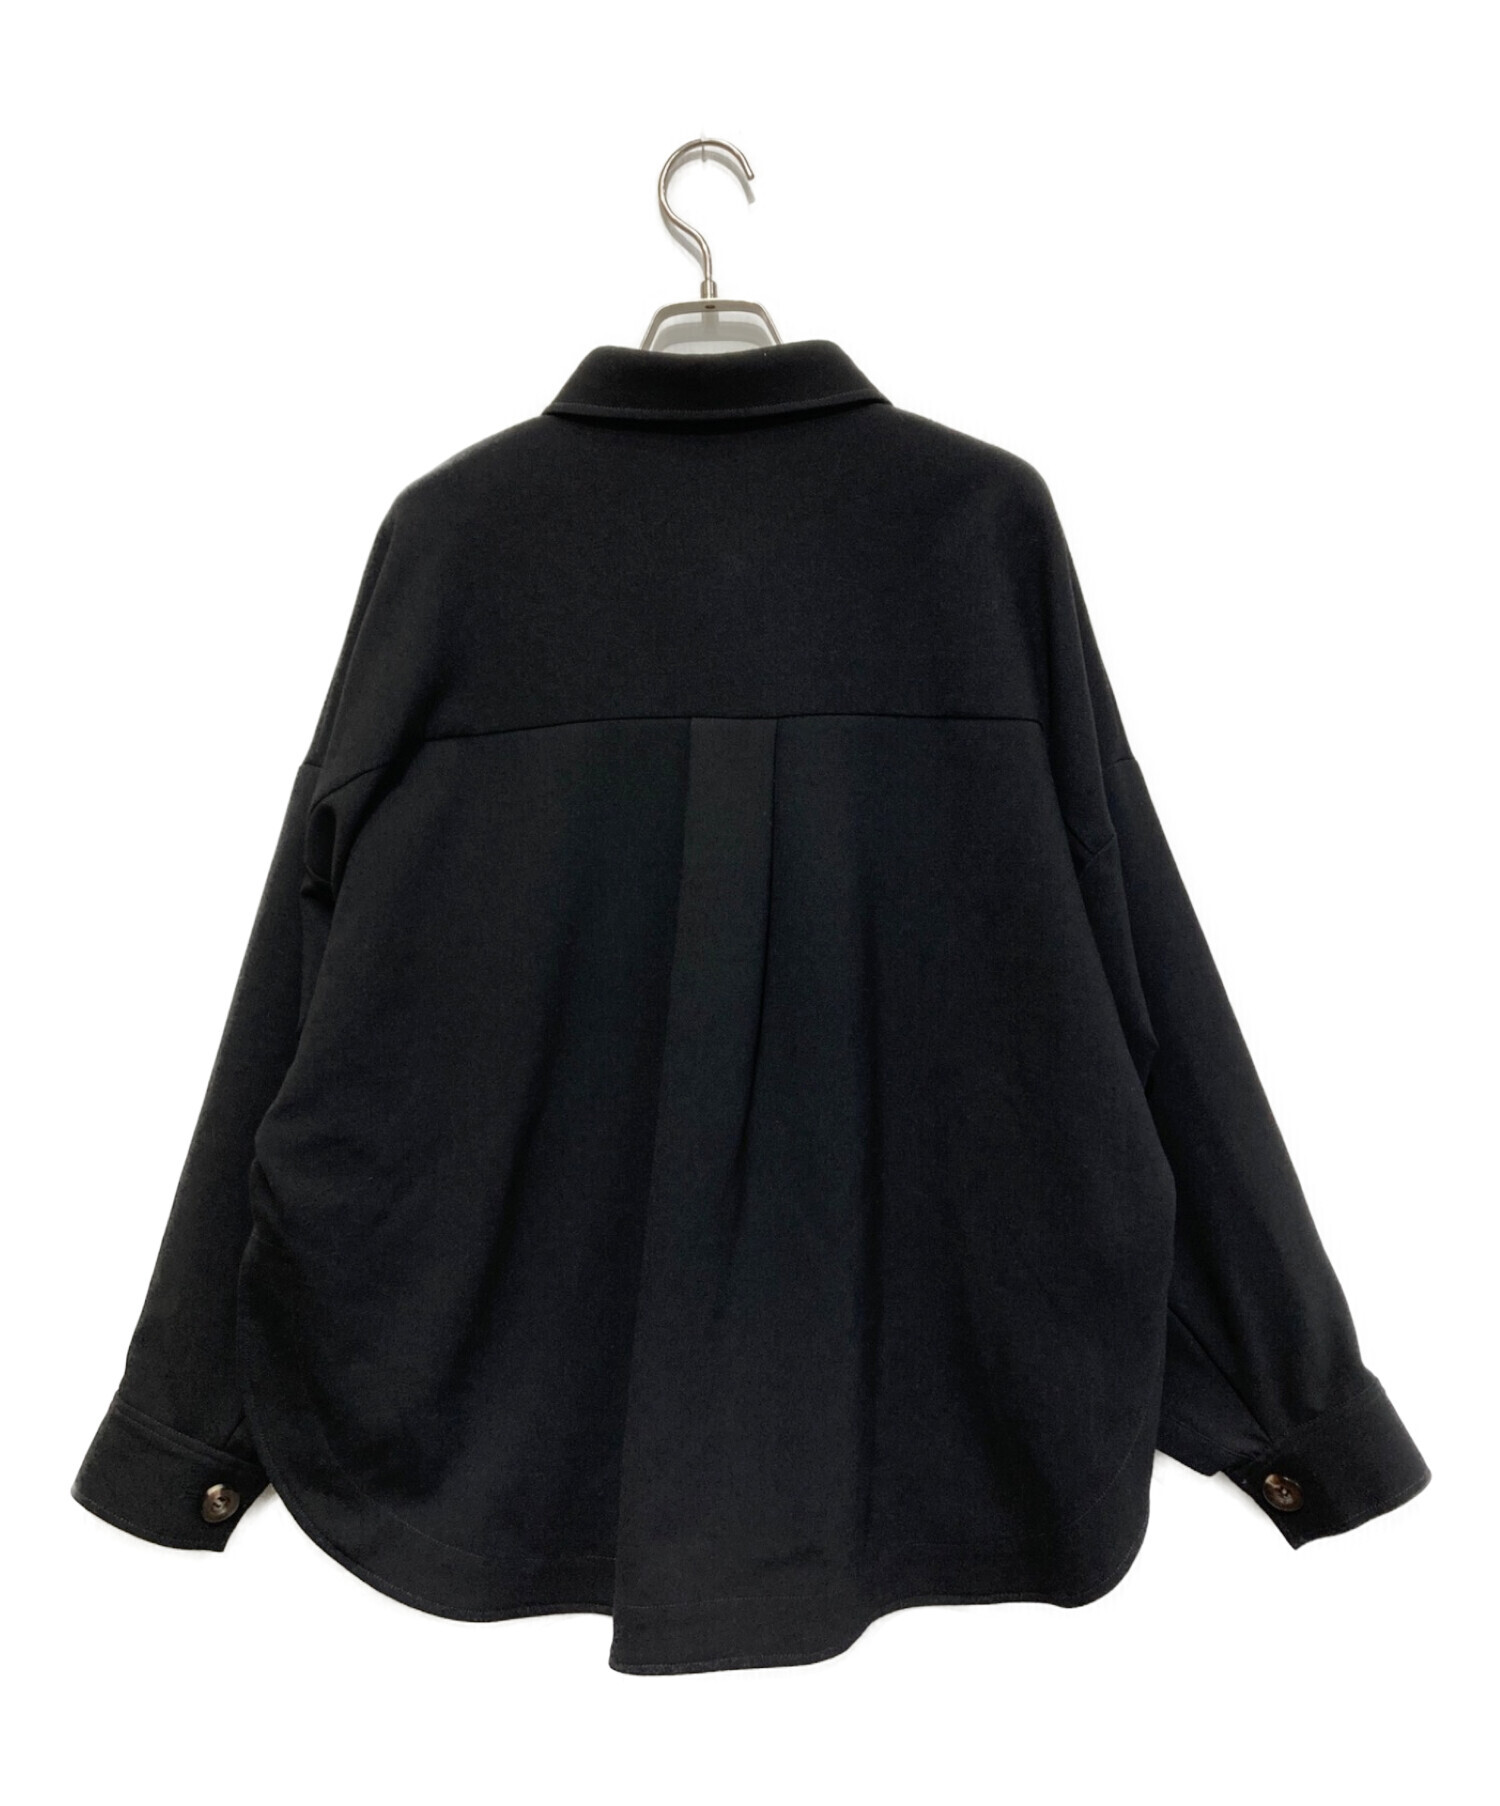 ENFOLD (エンフォルド) ダブルクロスシャツ ブラック サイズ:SIZE 36